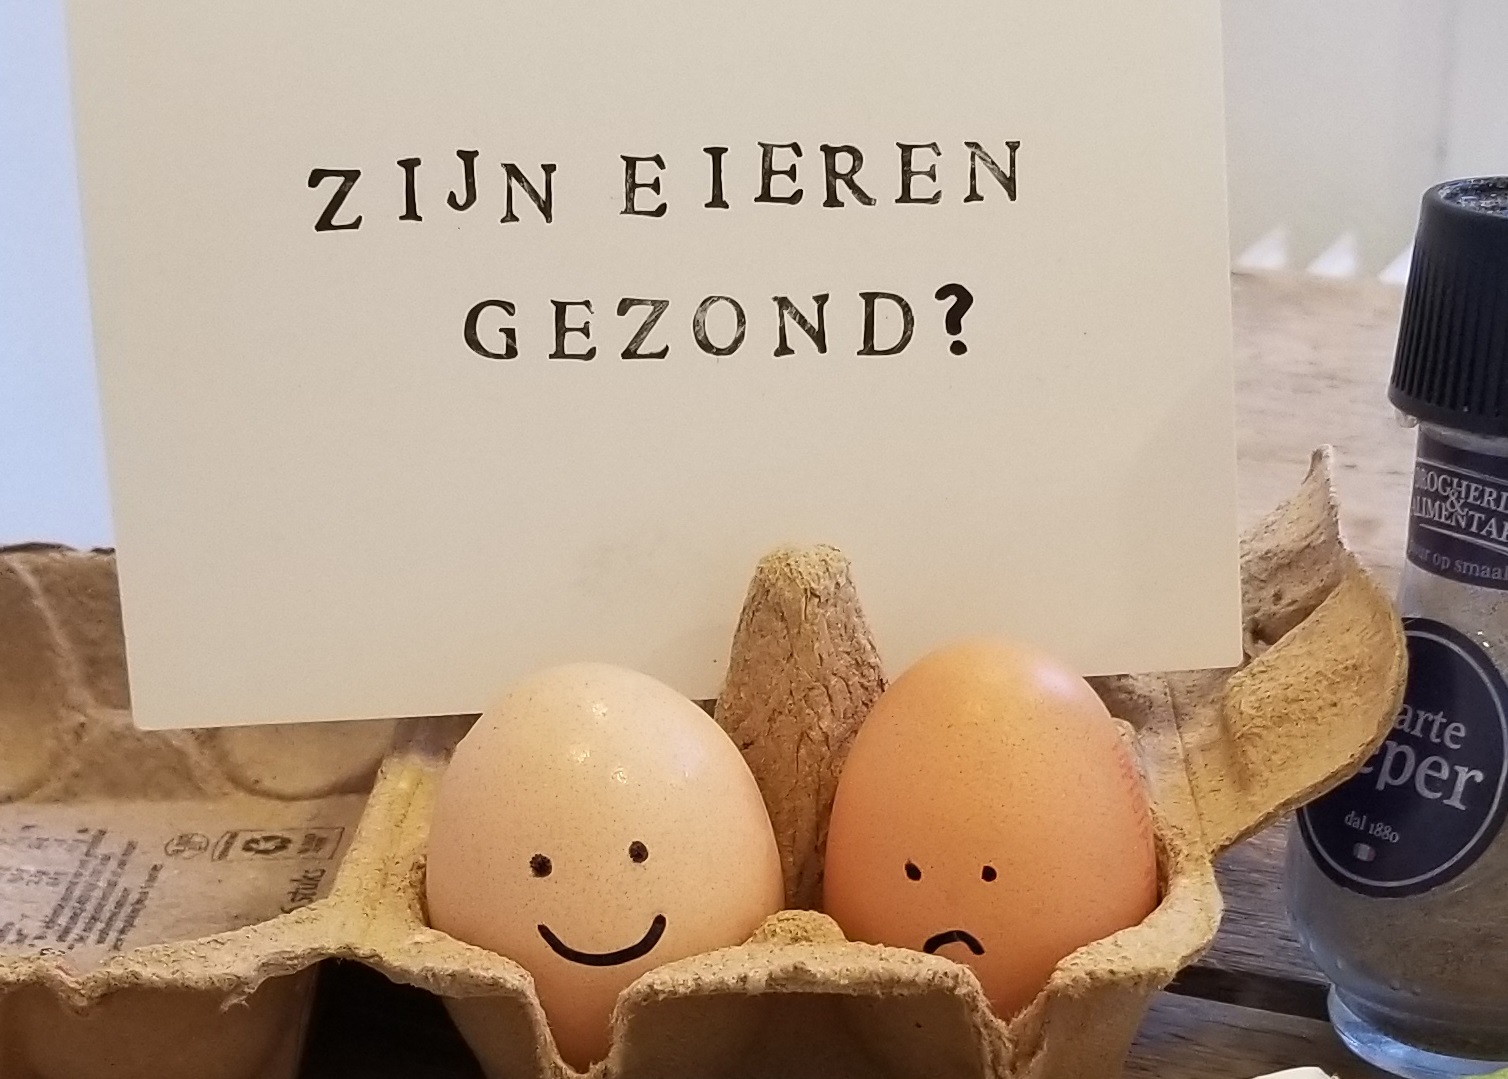 Zijn eieren gezond?